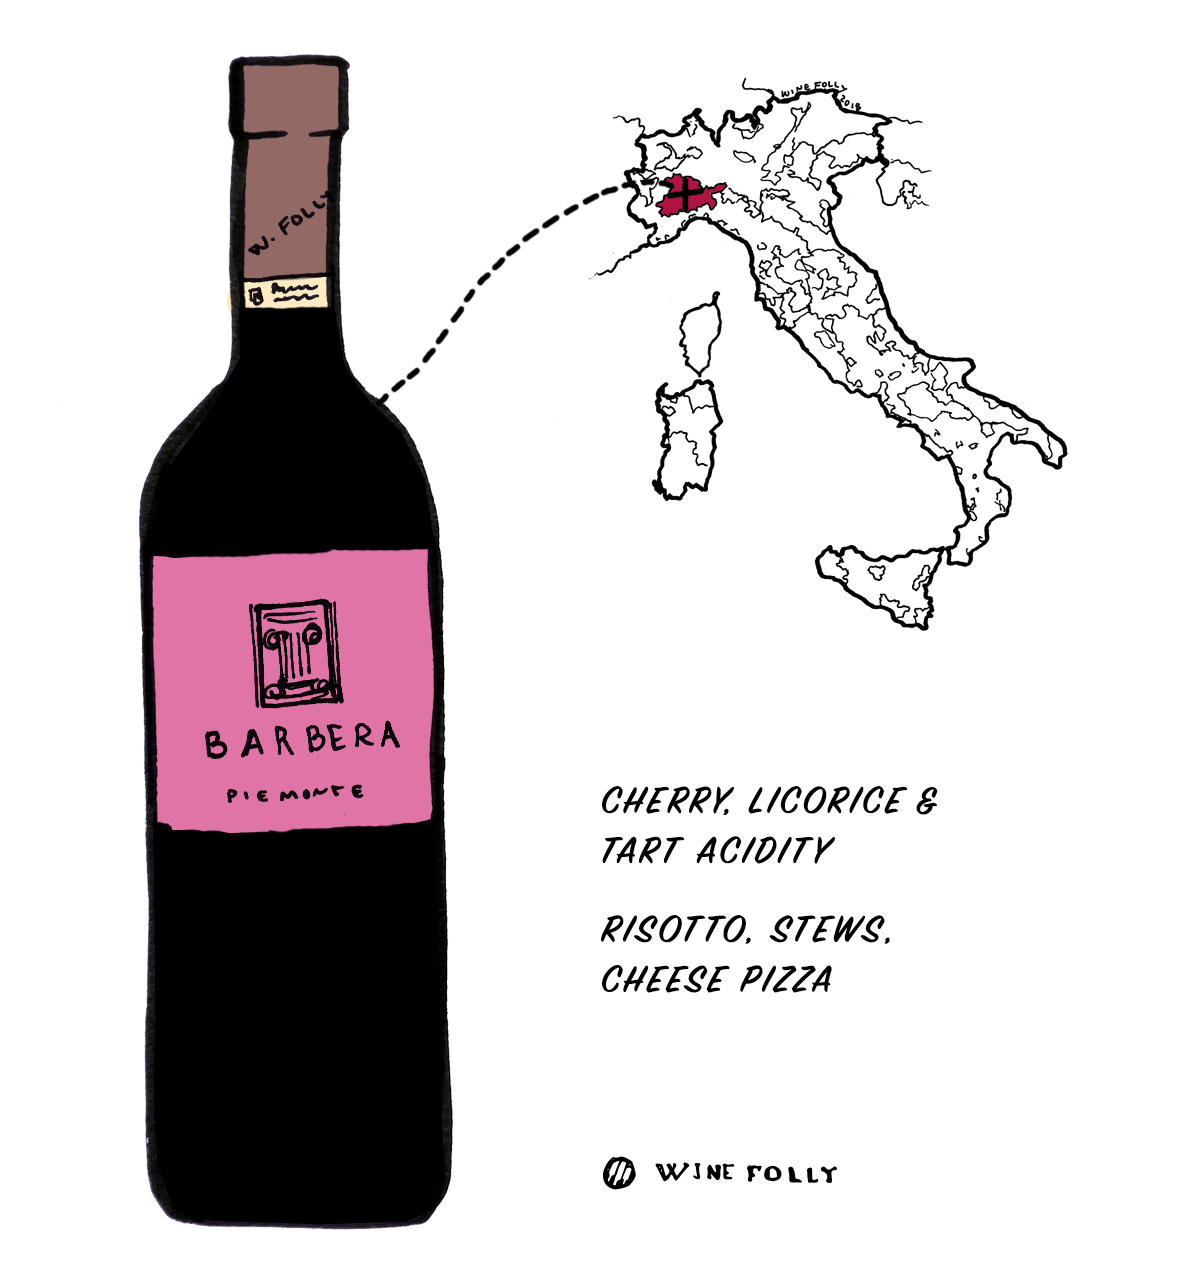 ענבי יין אדום ברברה מאיטליה - בחירה מצוינת למתחילים ביין איטלקי - איור מאת Wine Folly